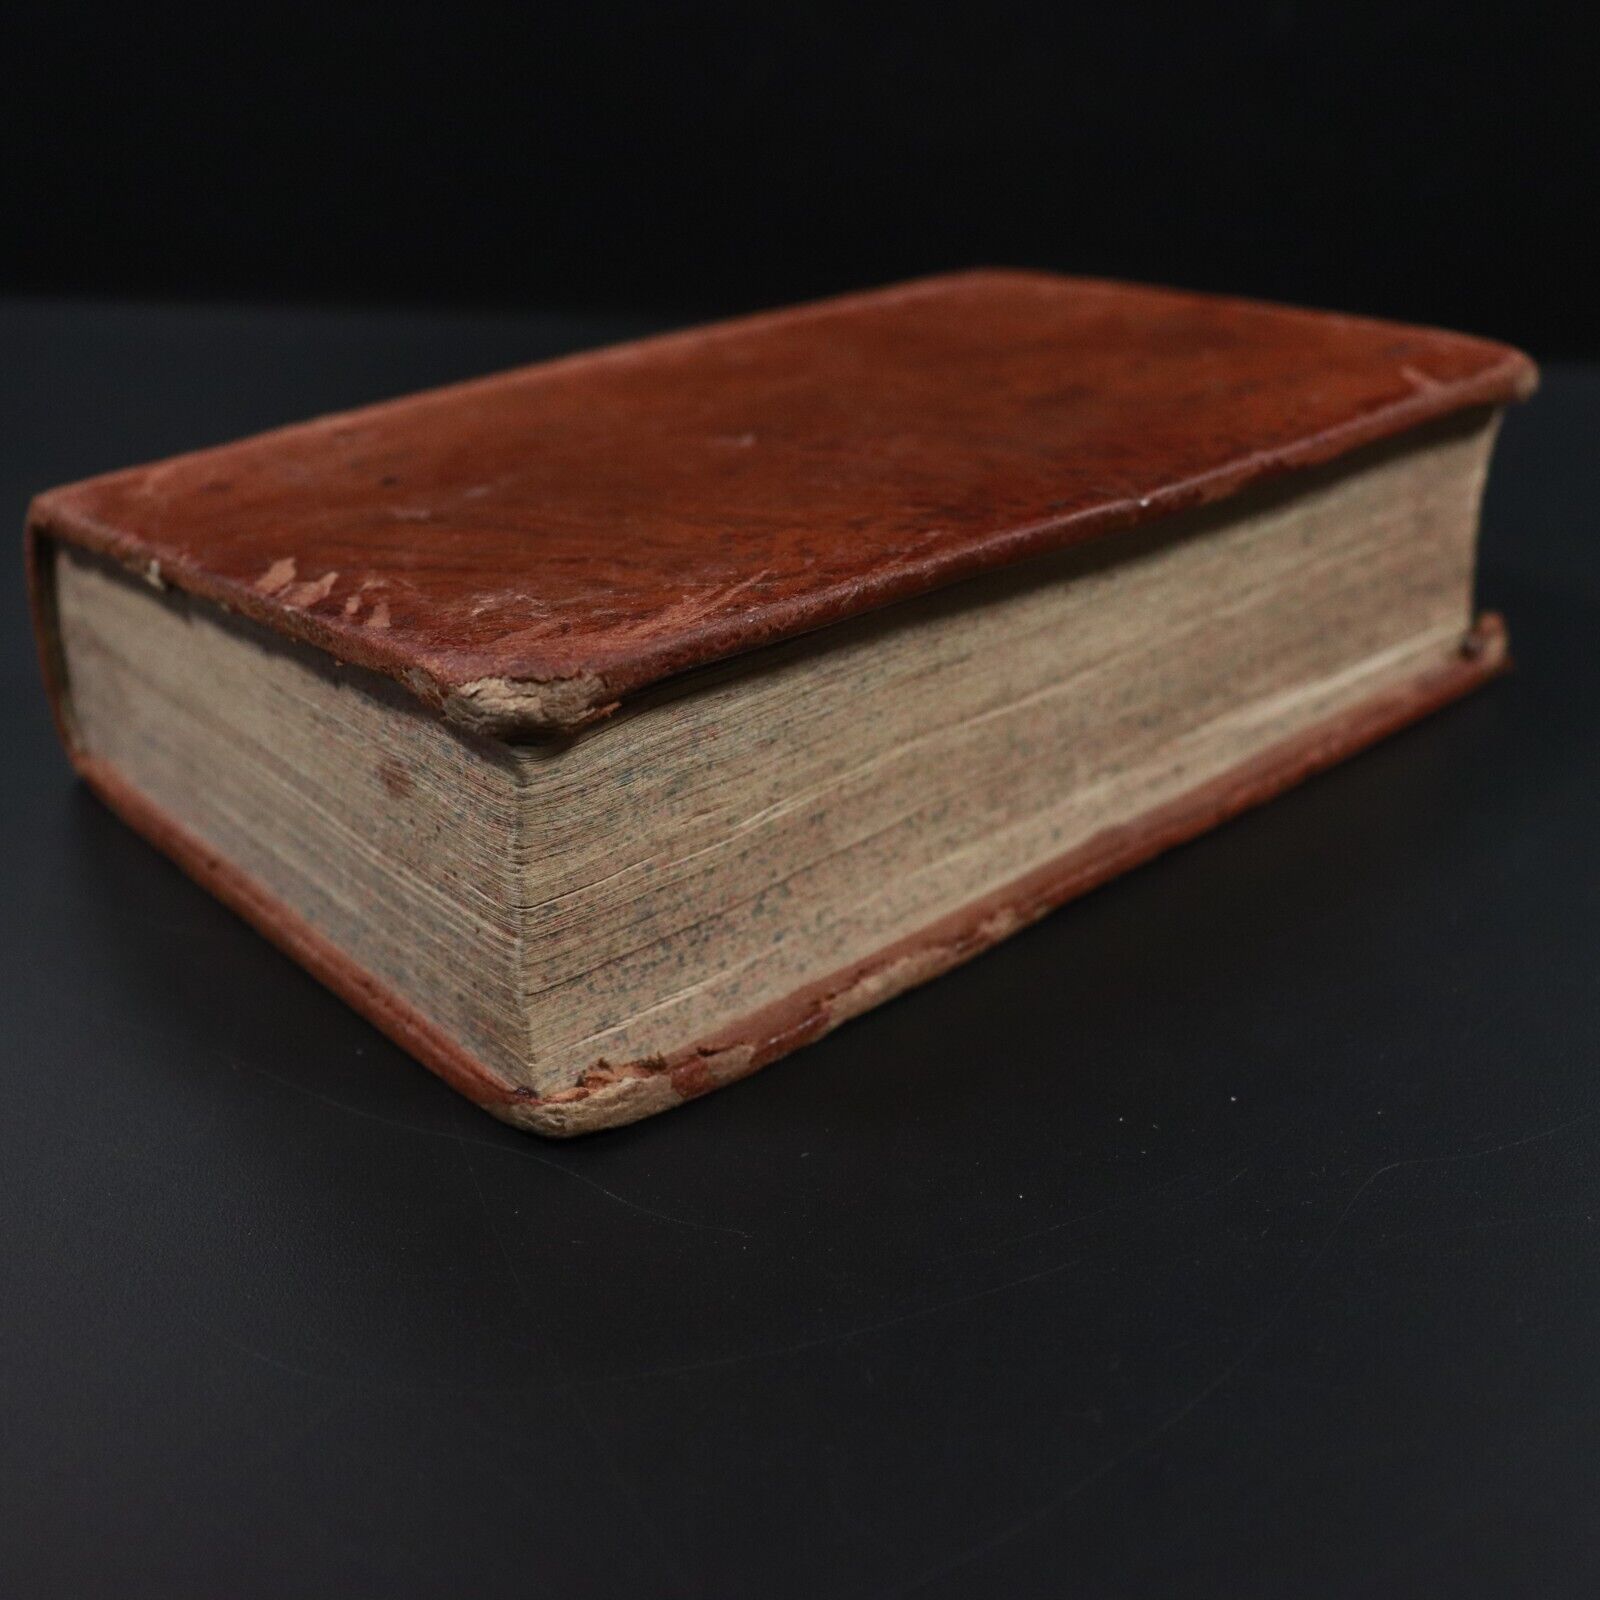 1819 Instructions Générales En Forme De Catéchisme Antiquarian Religious Book